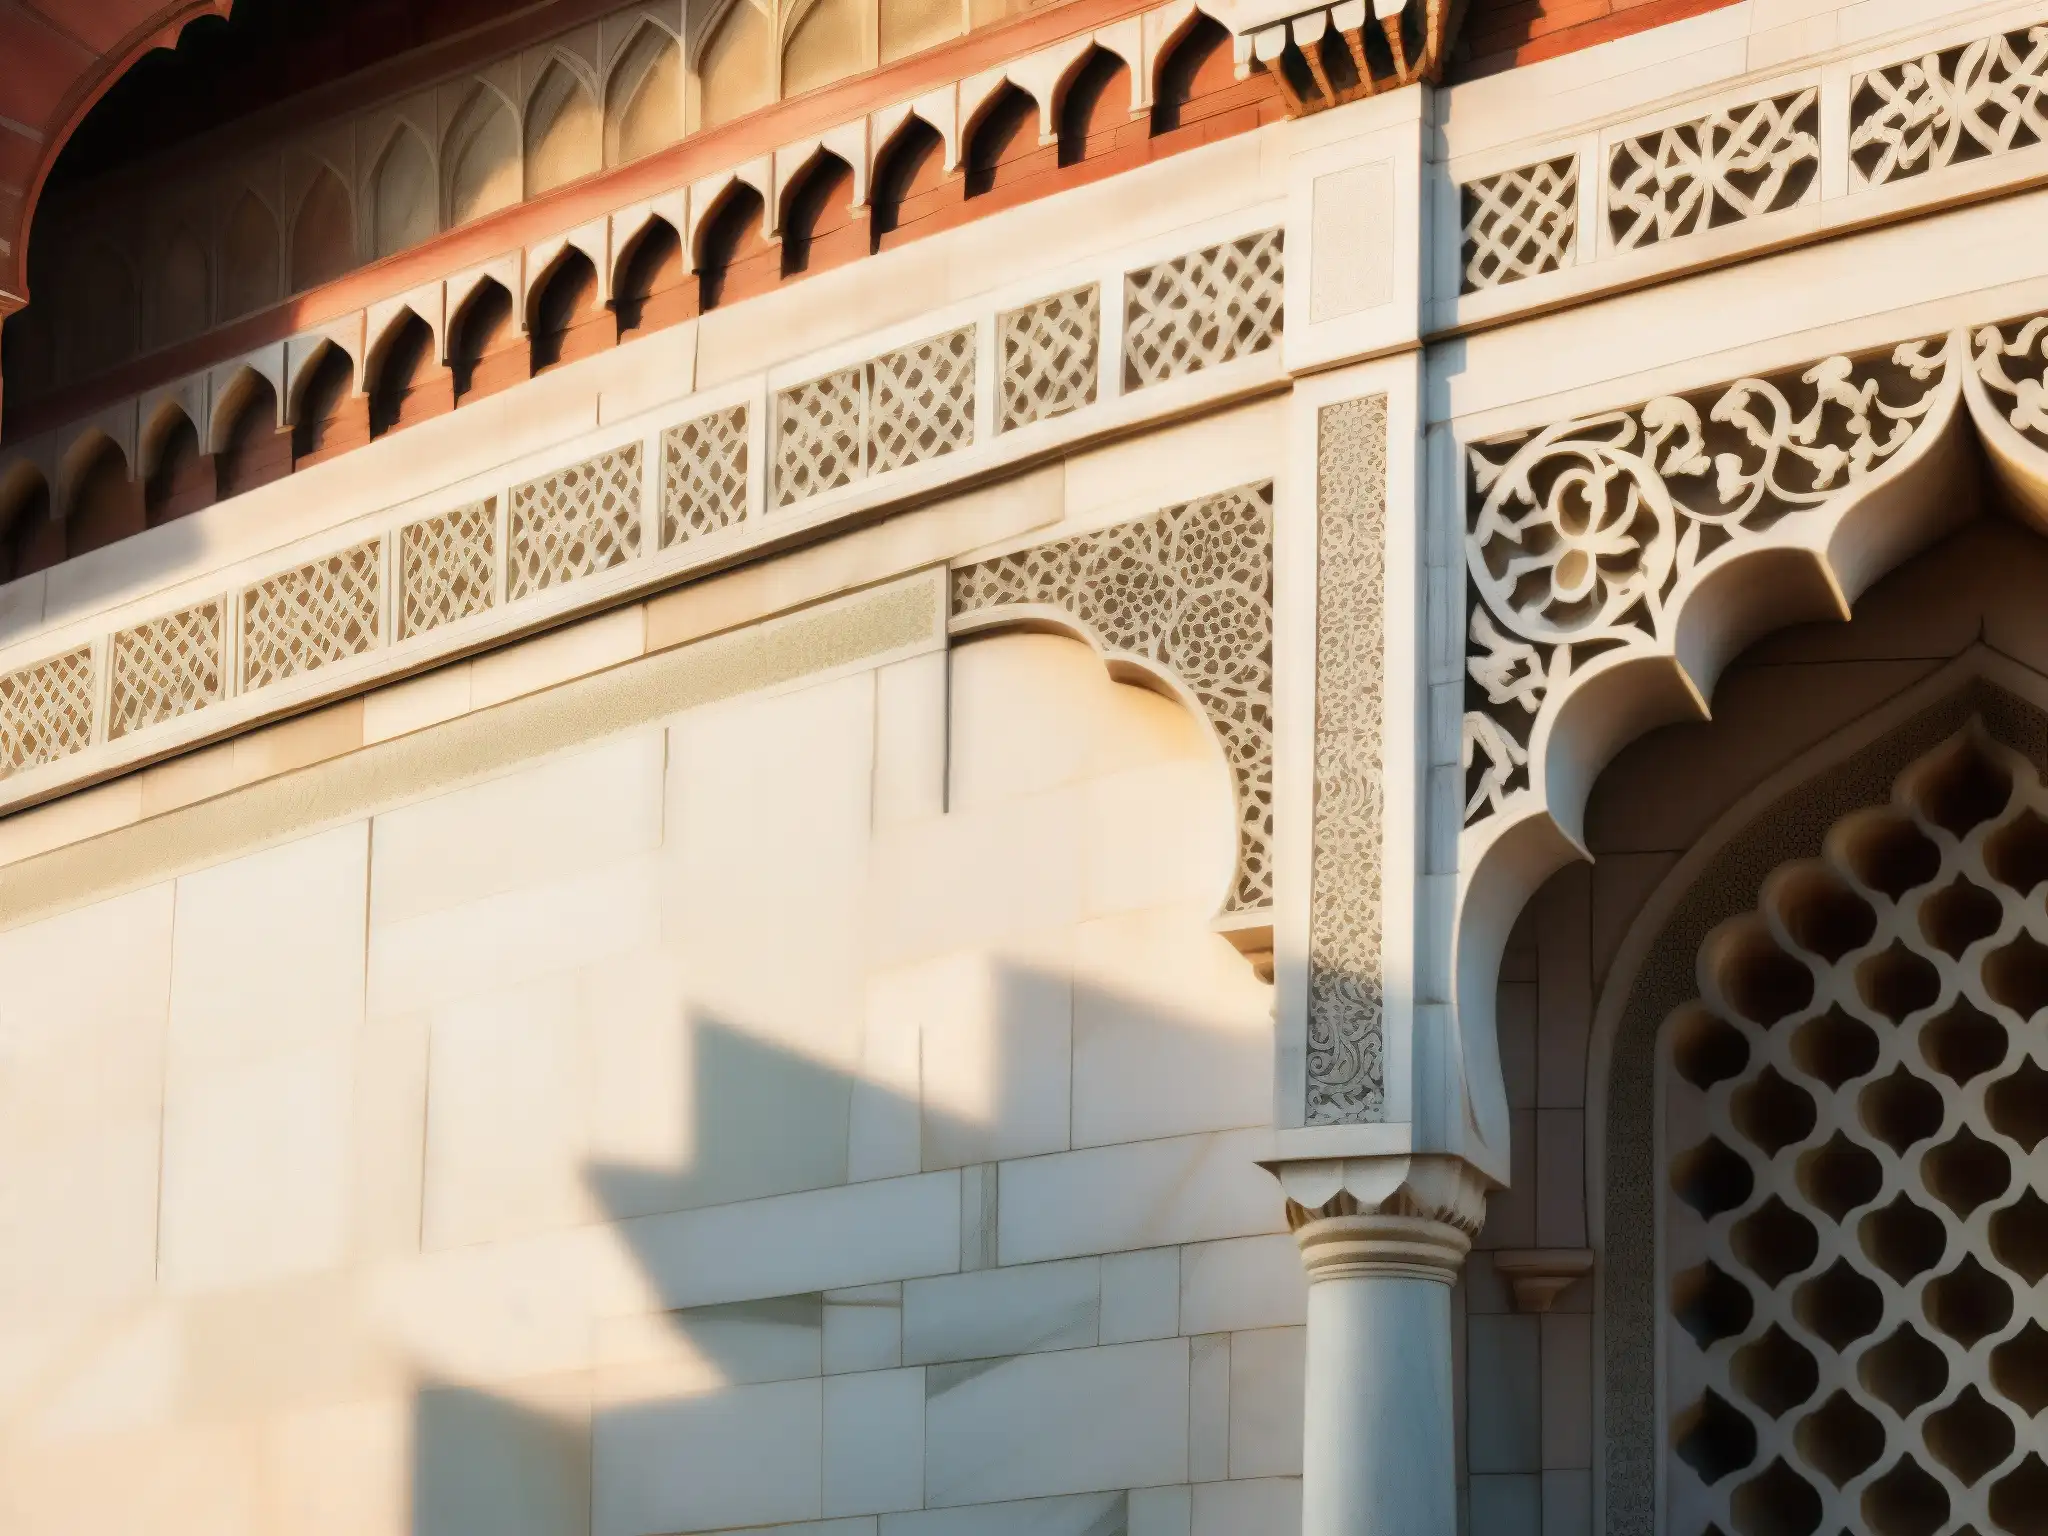 Detalles impresionantes de la Maldición del Taj Mahal leyenda, iluminados por la suave luz matutina, revelando su belleza atemporal